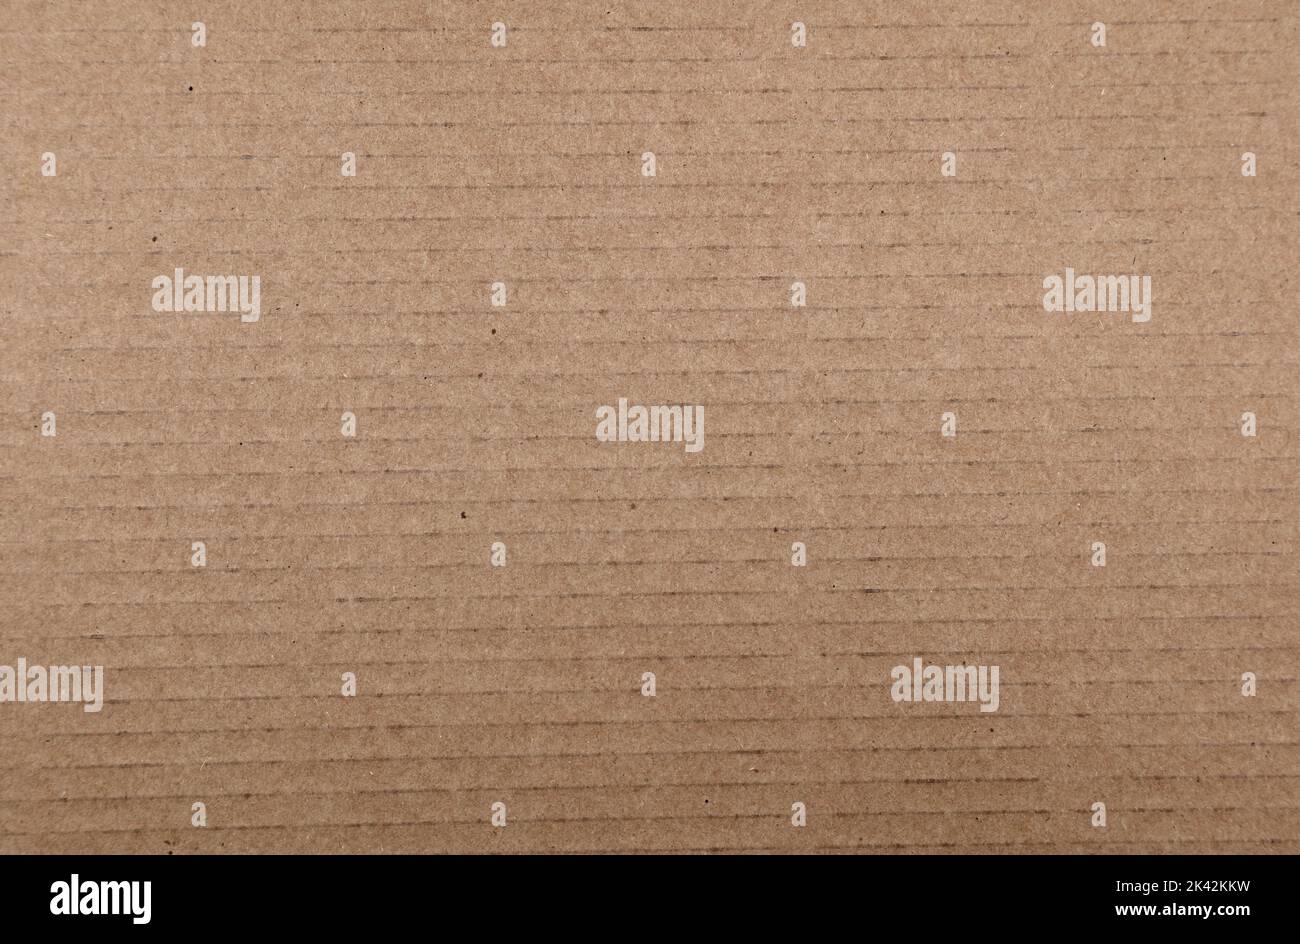 Closeup of brown cardboard texture Stock Photo